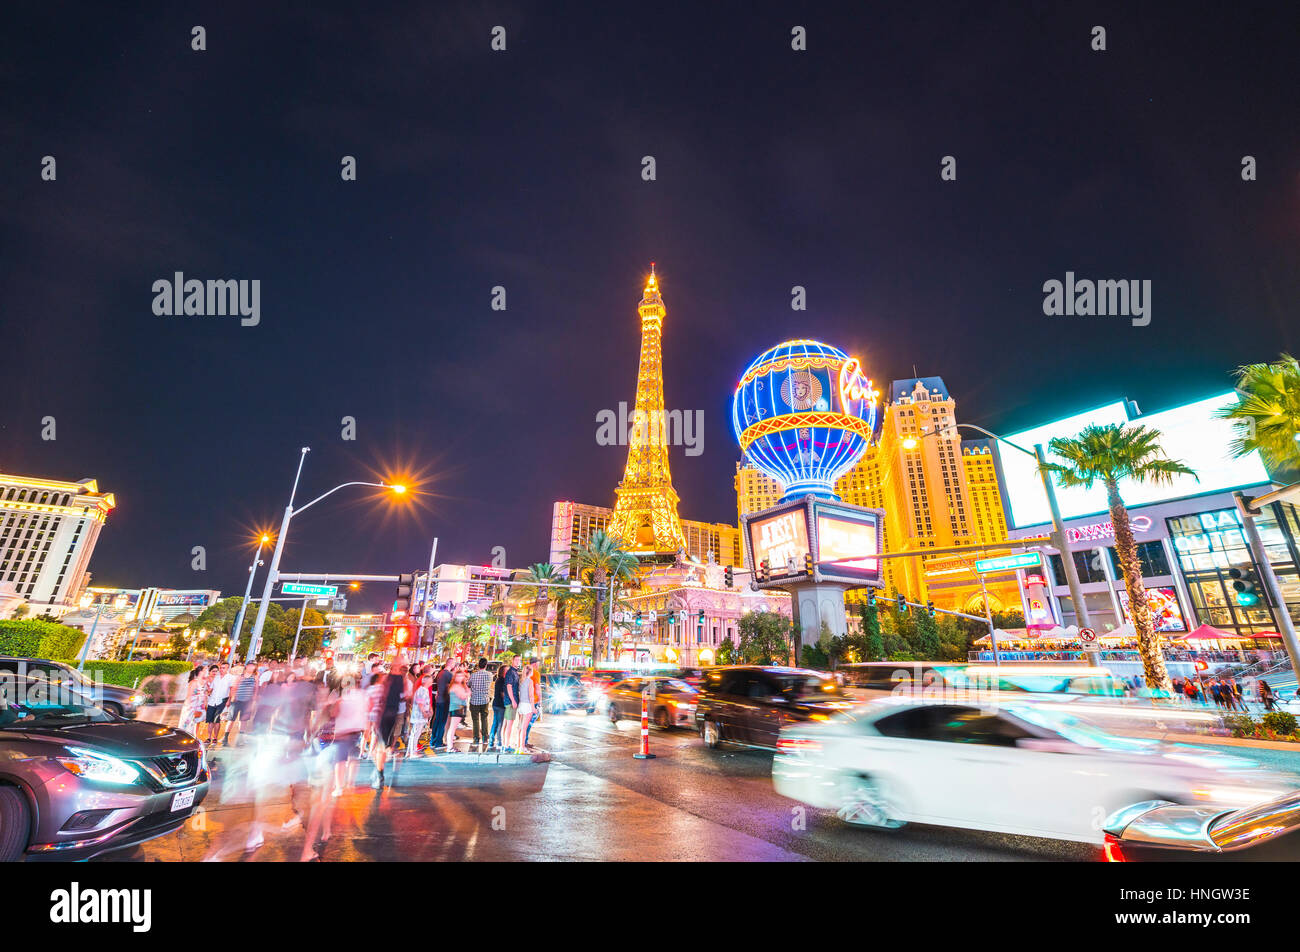 Las Vegas,Nevada,usa.07/28/16 : scenic view of Las Vegas cityscape at night with traffic lighting,las vegas,Nevada,usa. Stock Photo